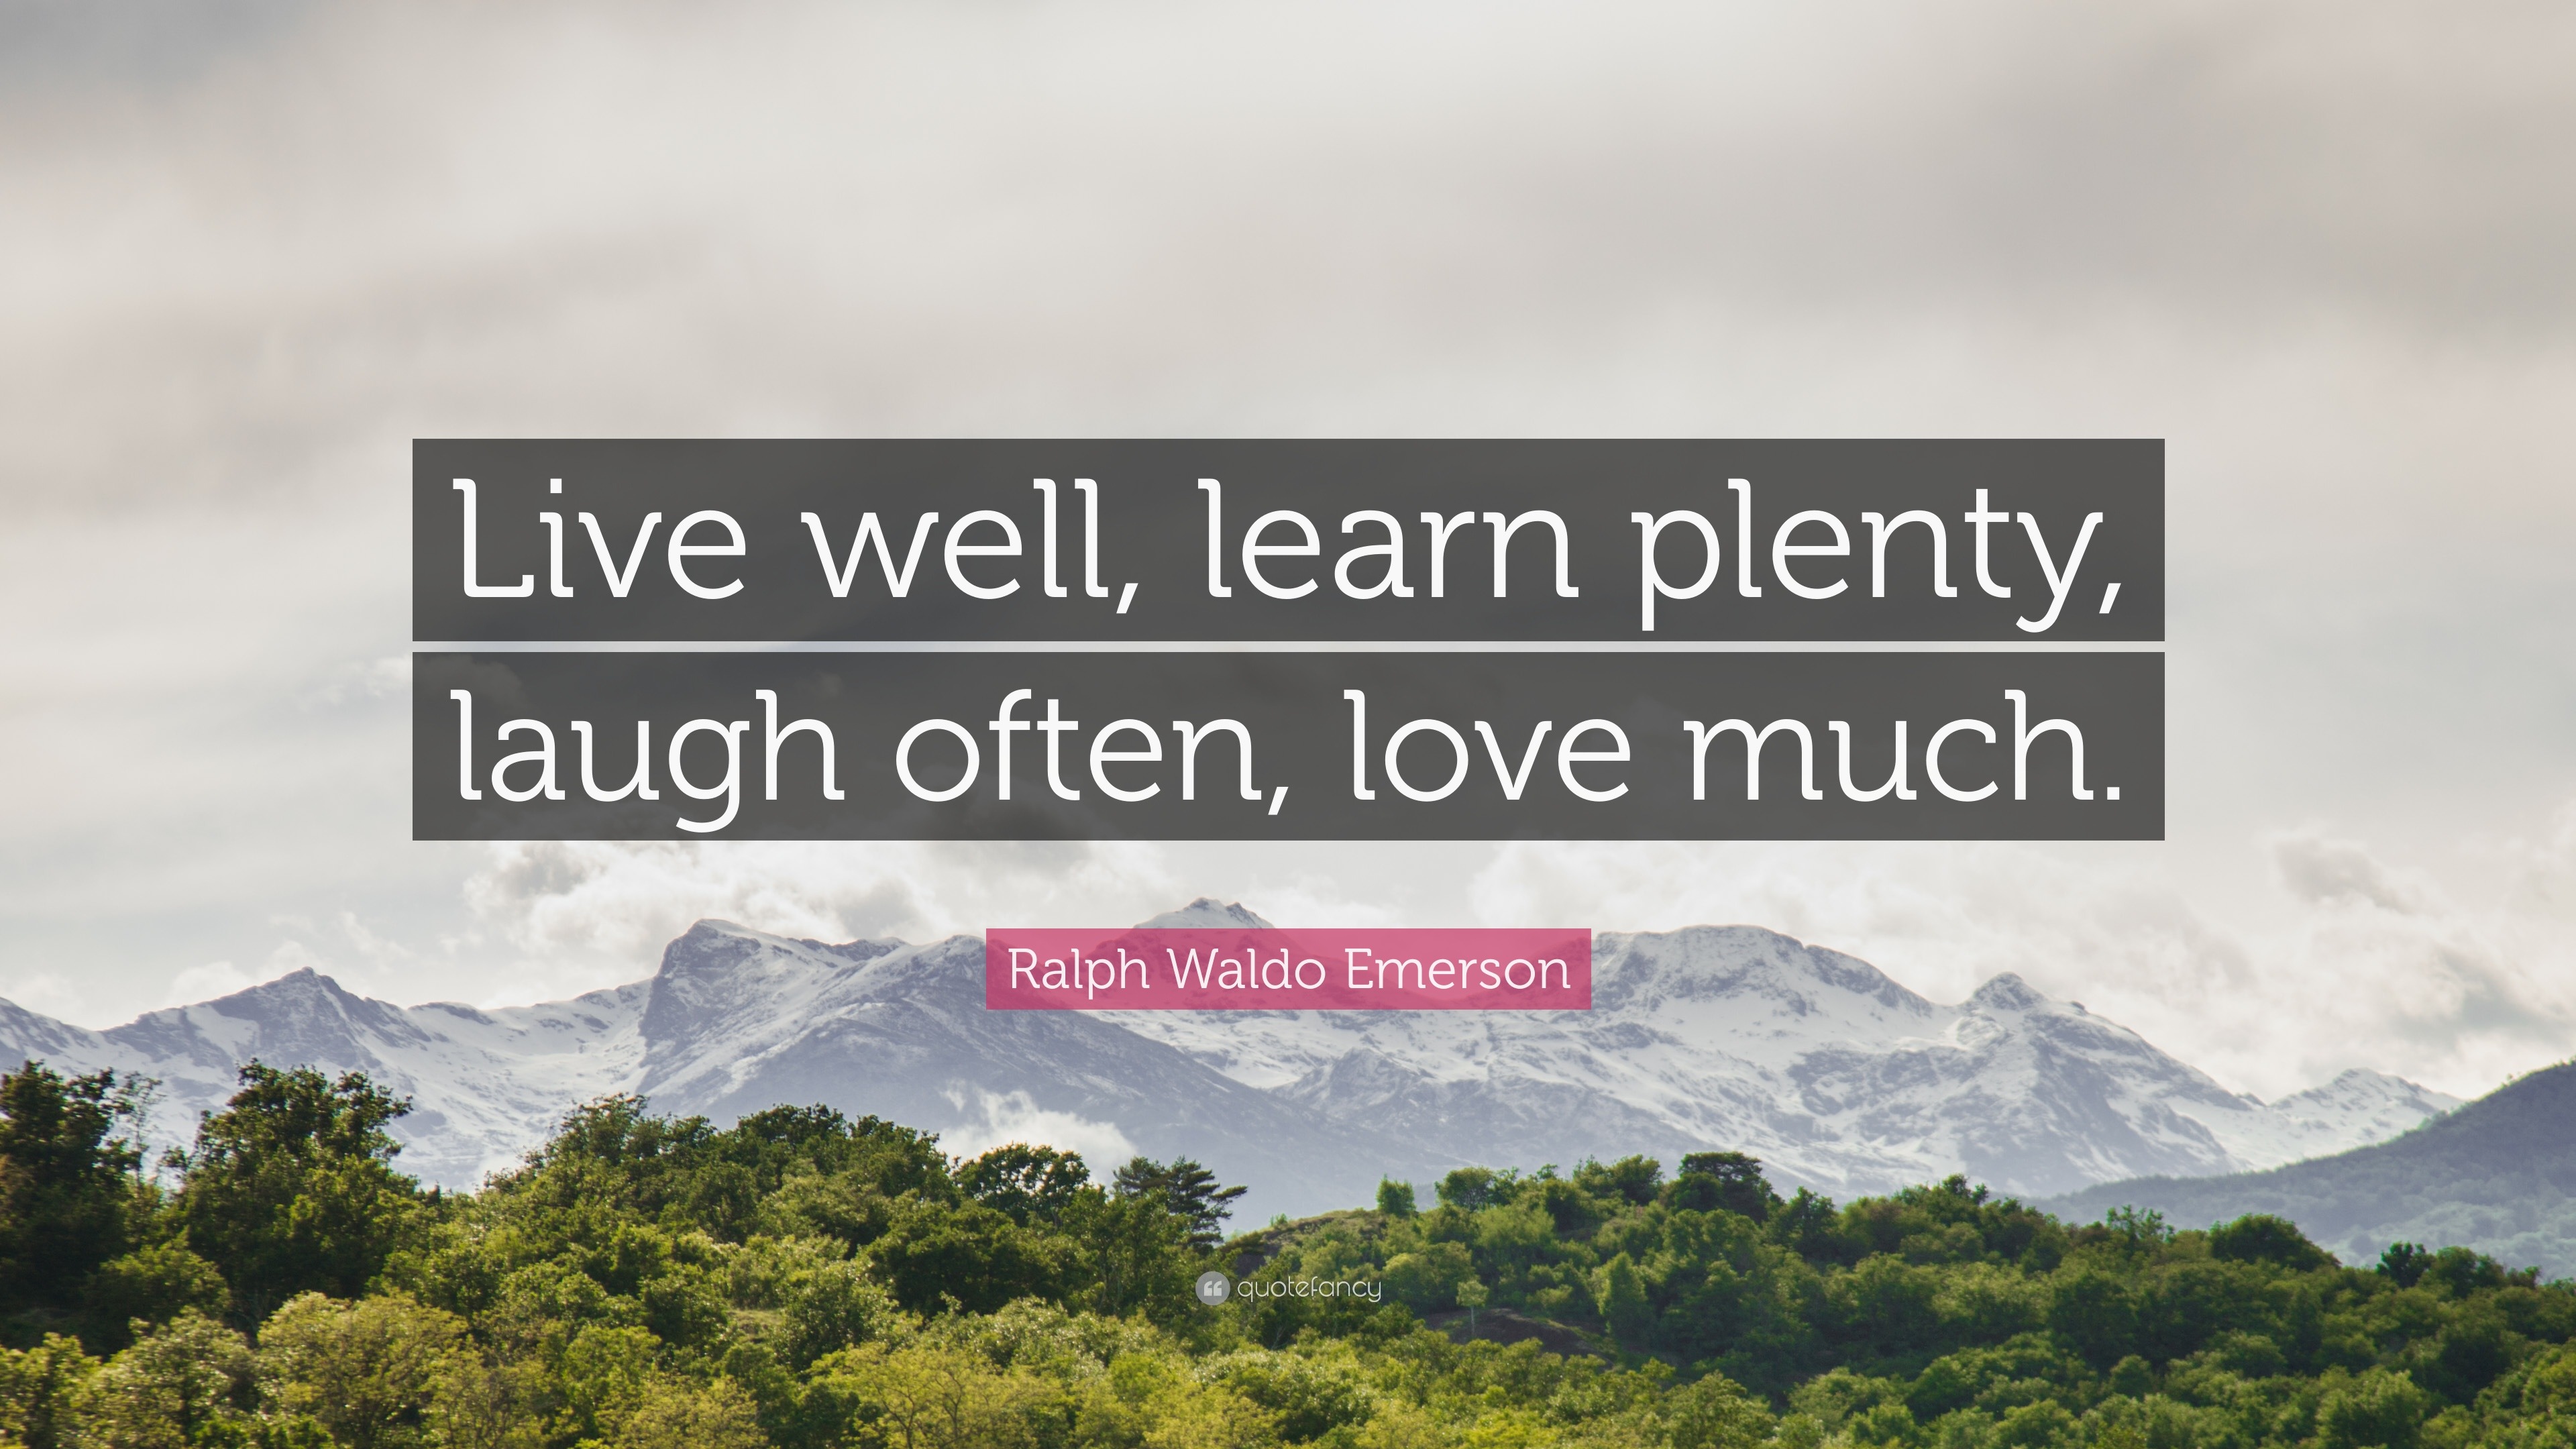 Ralph Waldo Emerson Quote “Live well learn plenty laugh often love